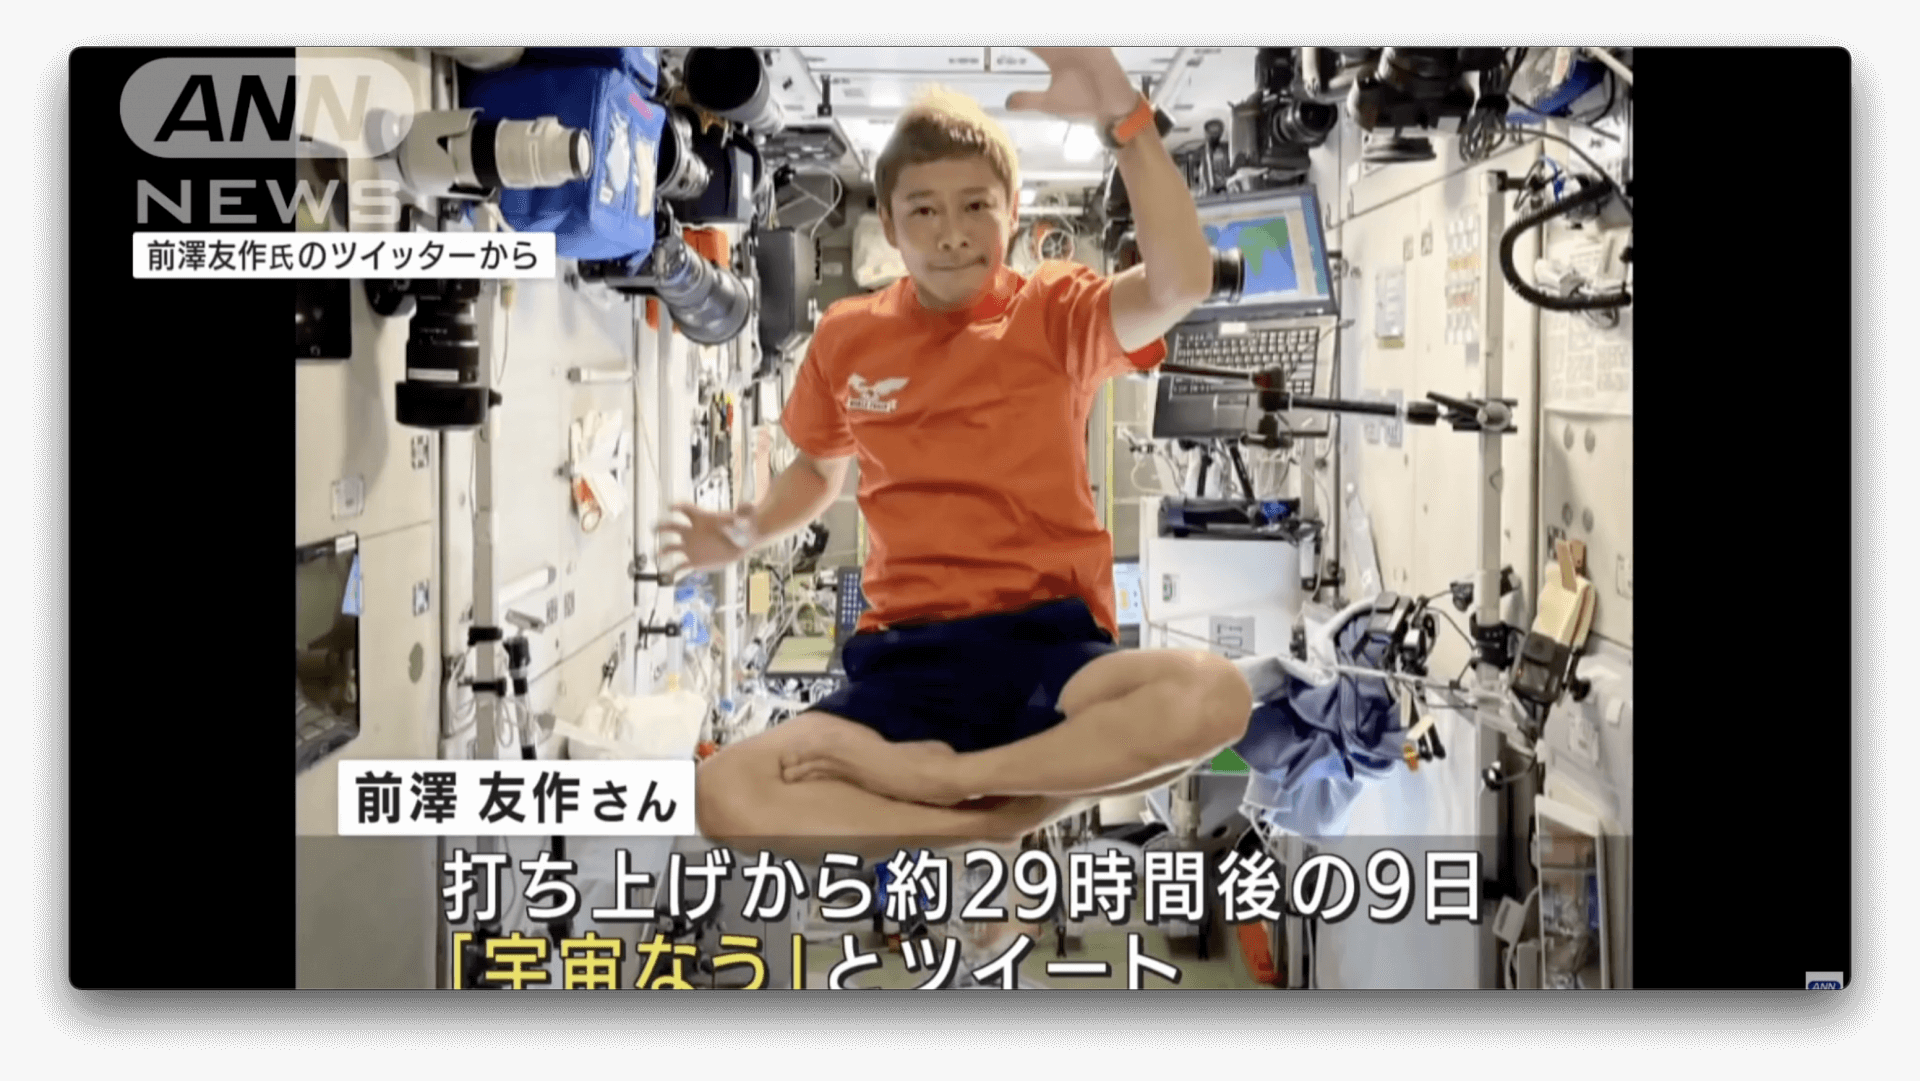 Bilionário japonês vai ao espaço e realiza o primeiro tweet em órbita da história